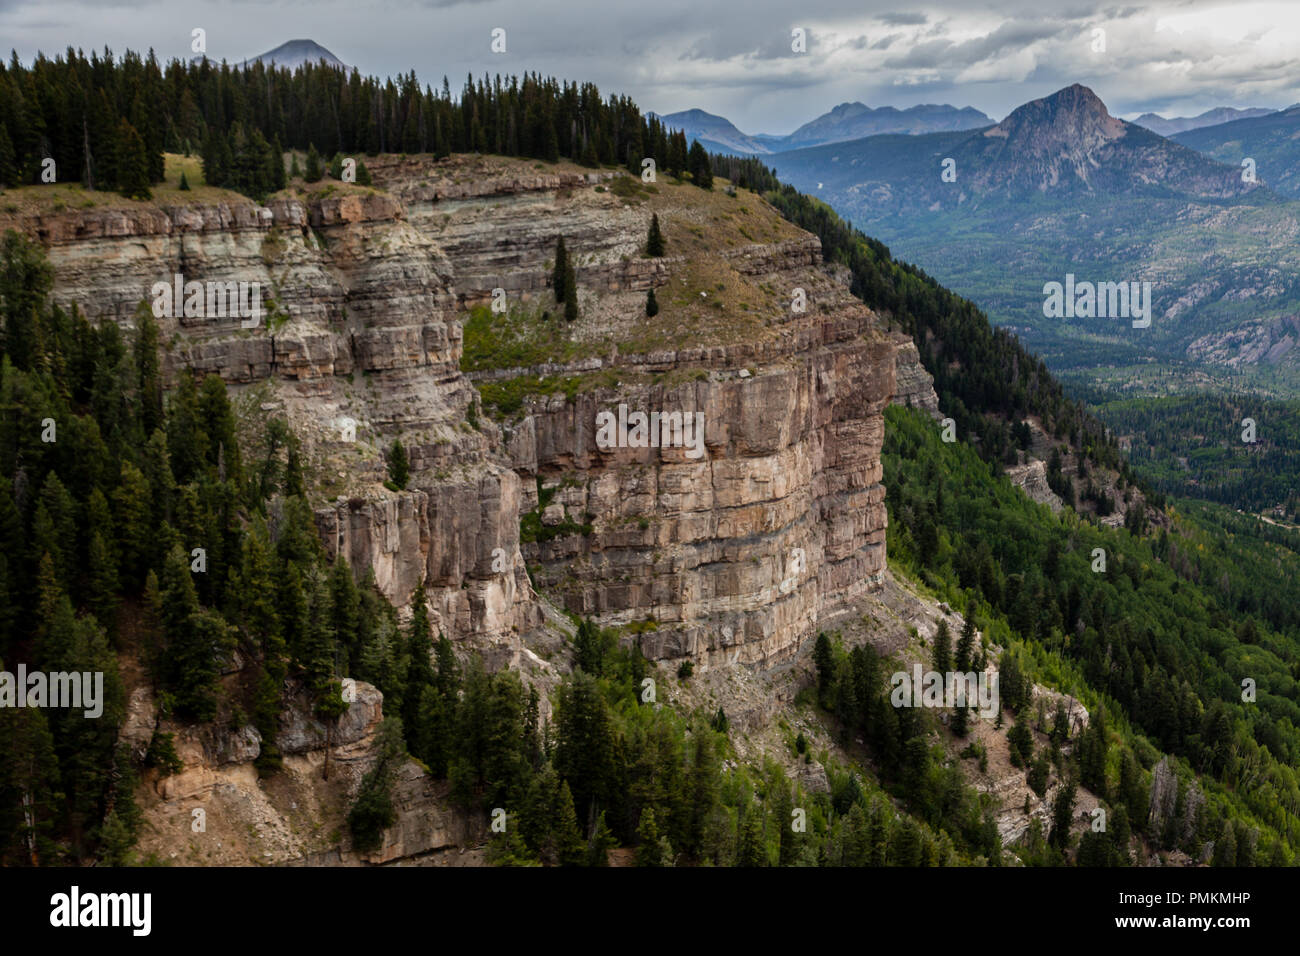 Sedimentären Felsen Wände sind ein reichlich vorhandenes Feature, wo das Colorado Plateau und die felsigen Berge treffen in der nähe von Durango, Co. Stockfoto